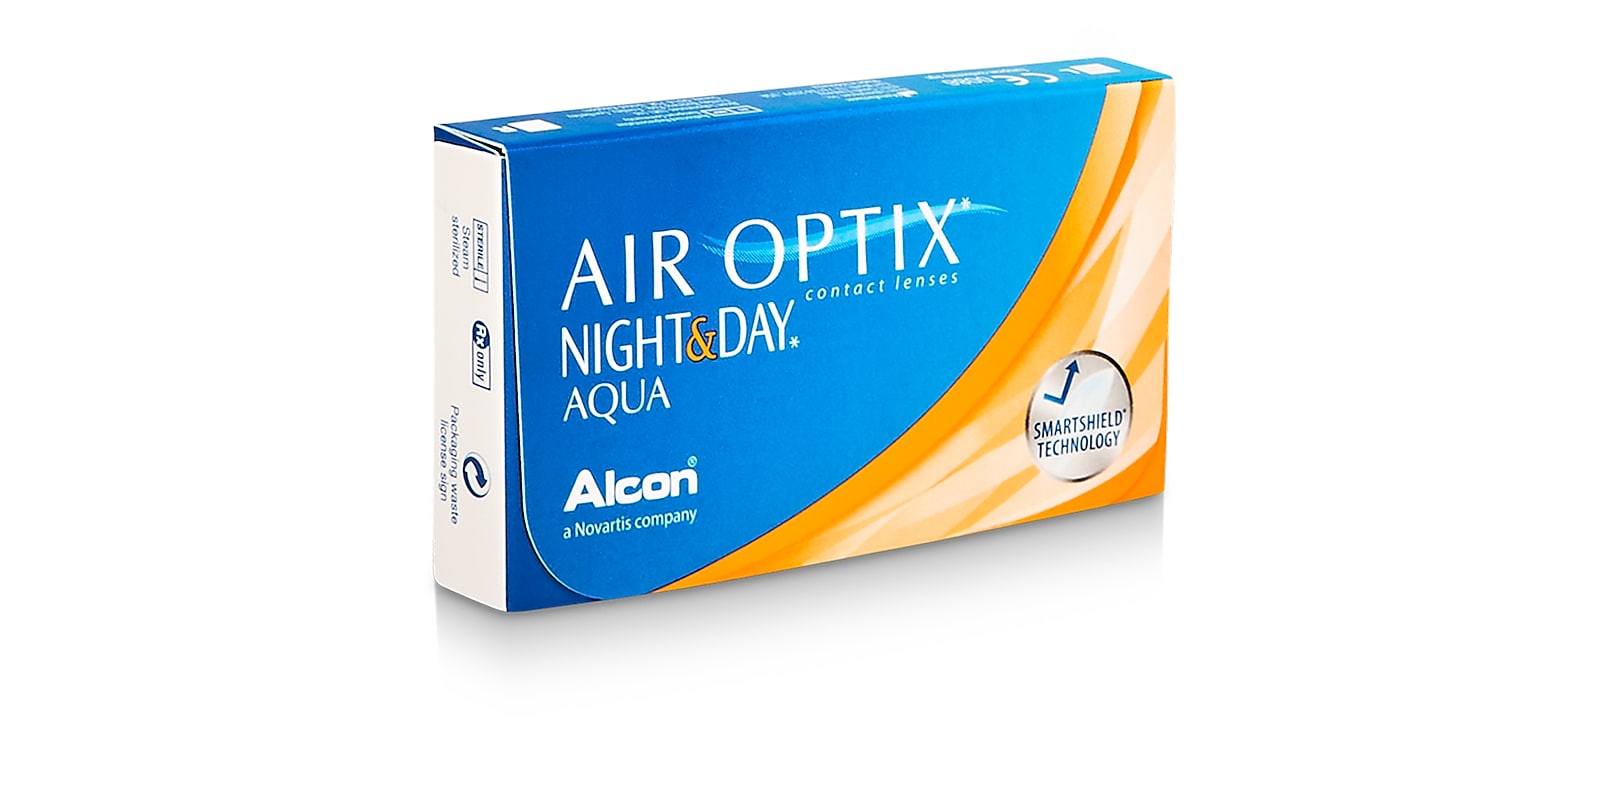 ALCON - Air Optix Night & Day Aqua, 6 Pack